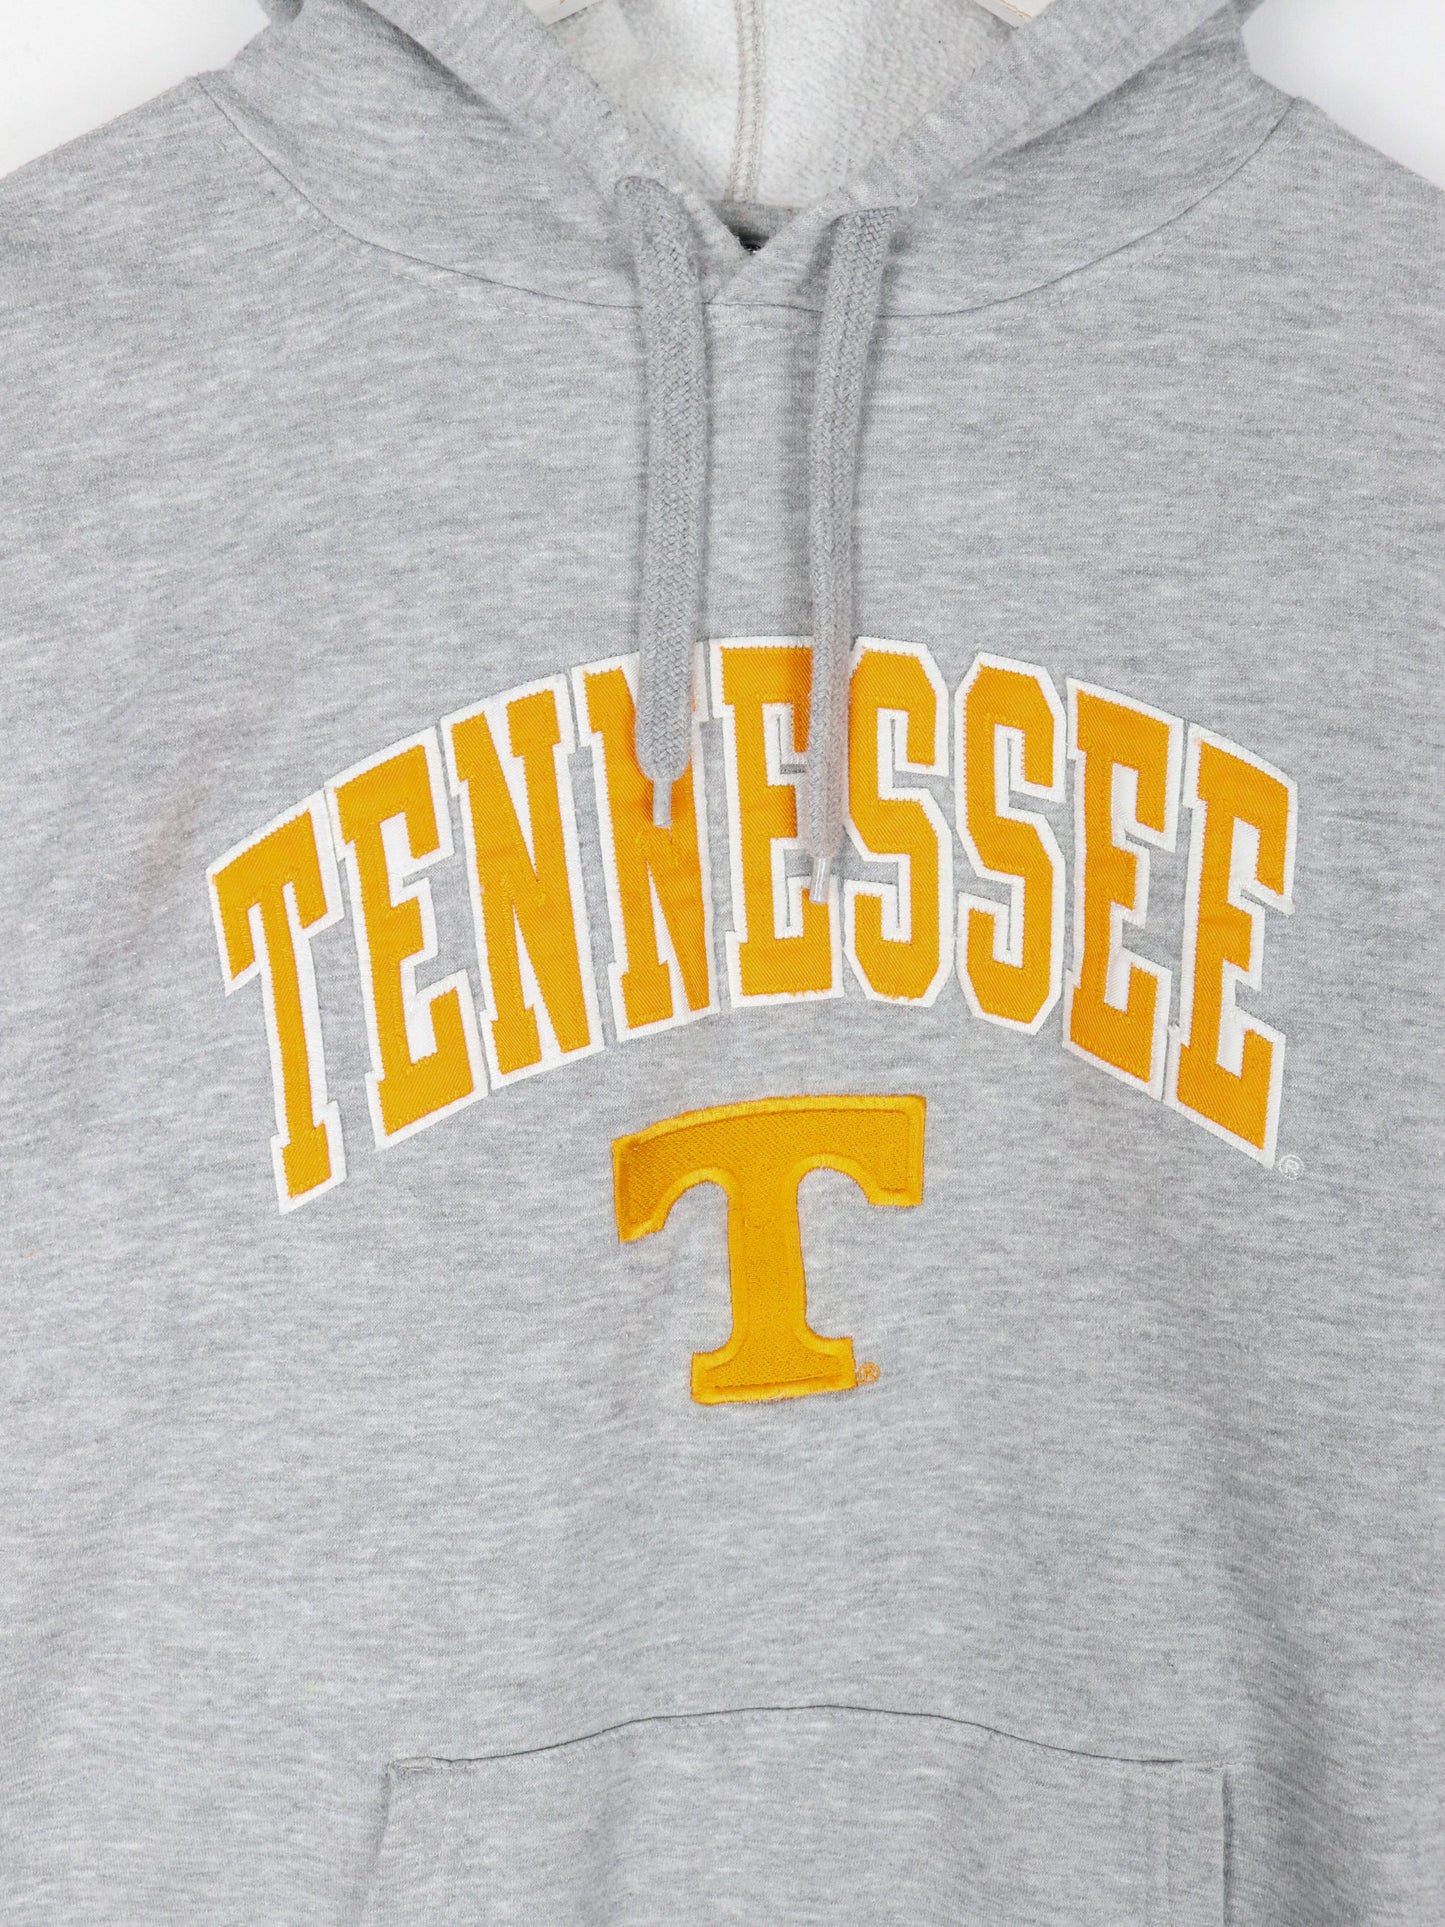 Tennessee Vols Sweatshirt Mens 2XL Grey College Hoodie